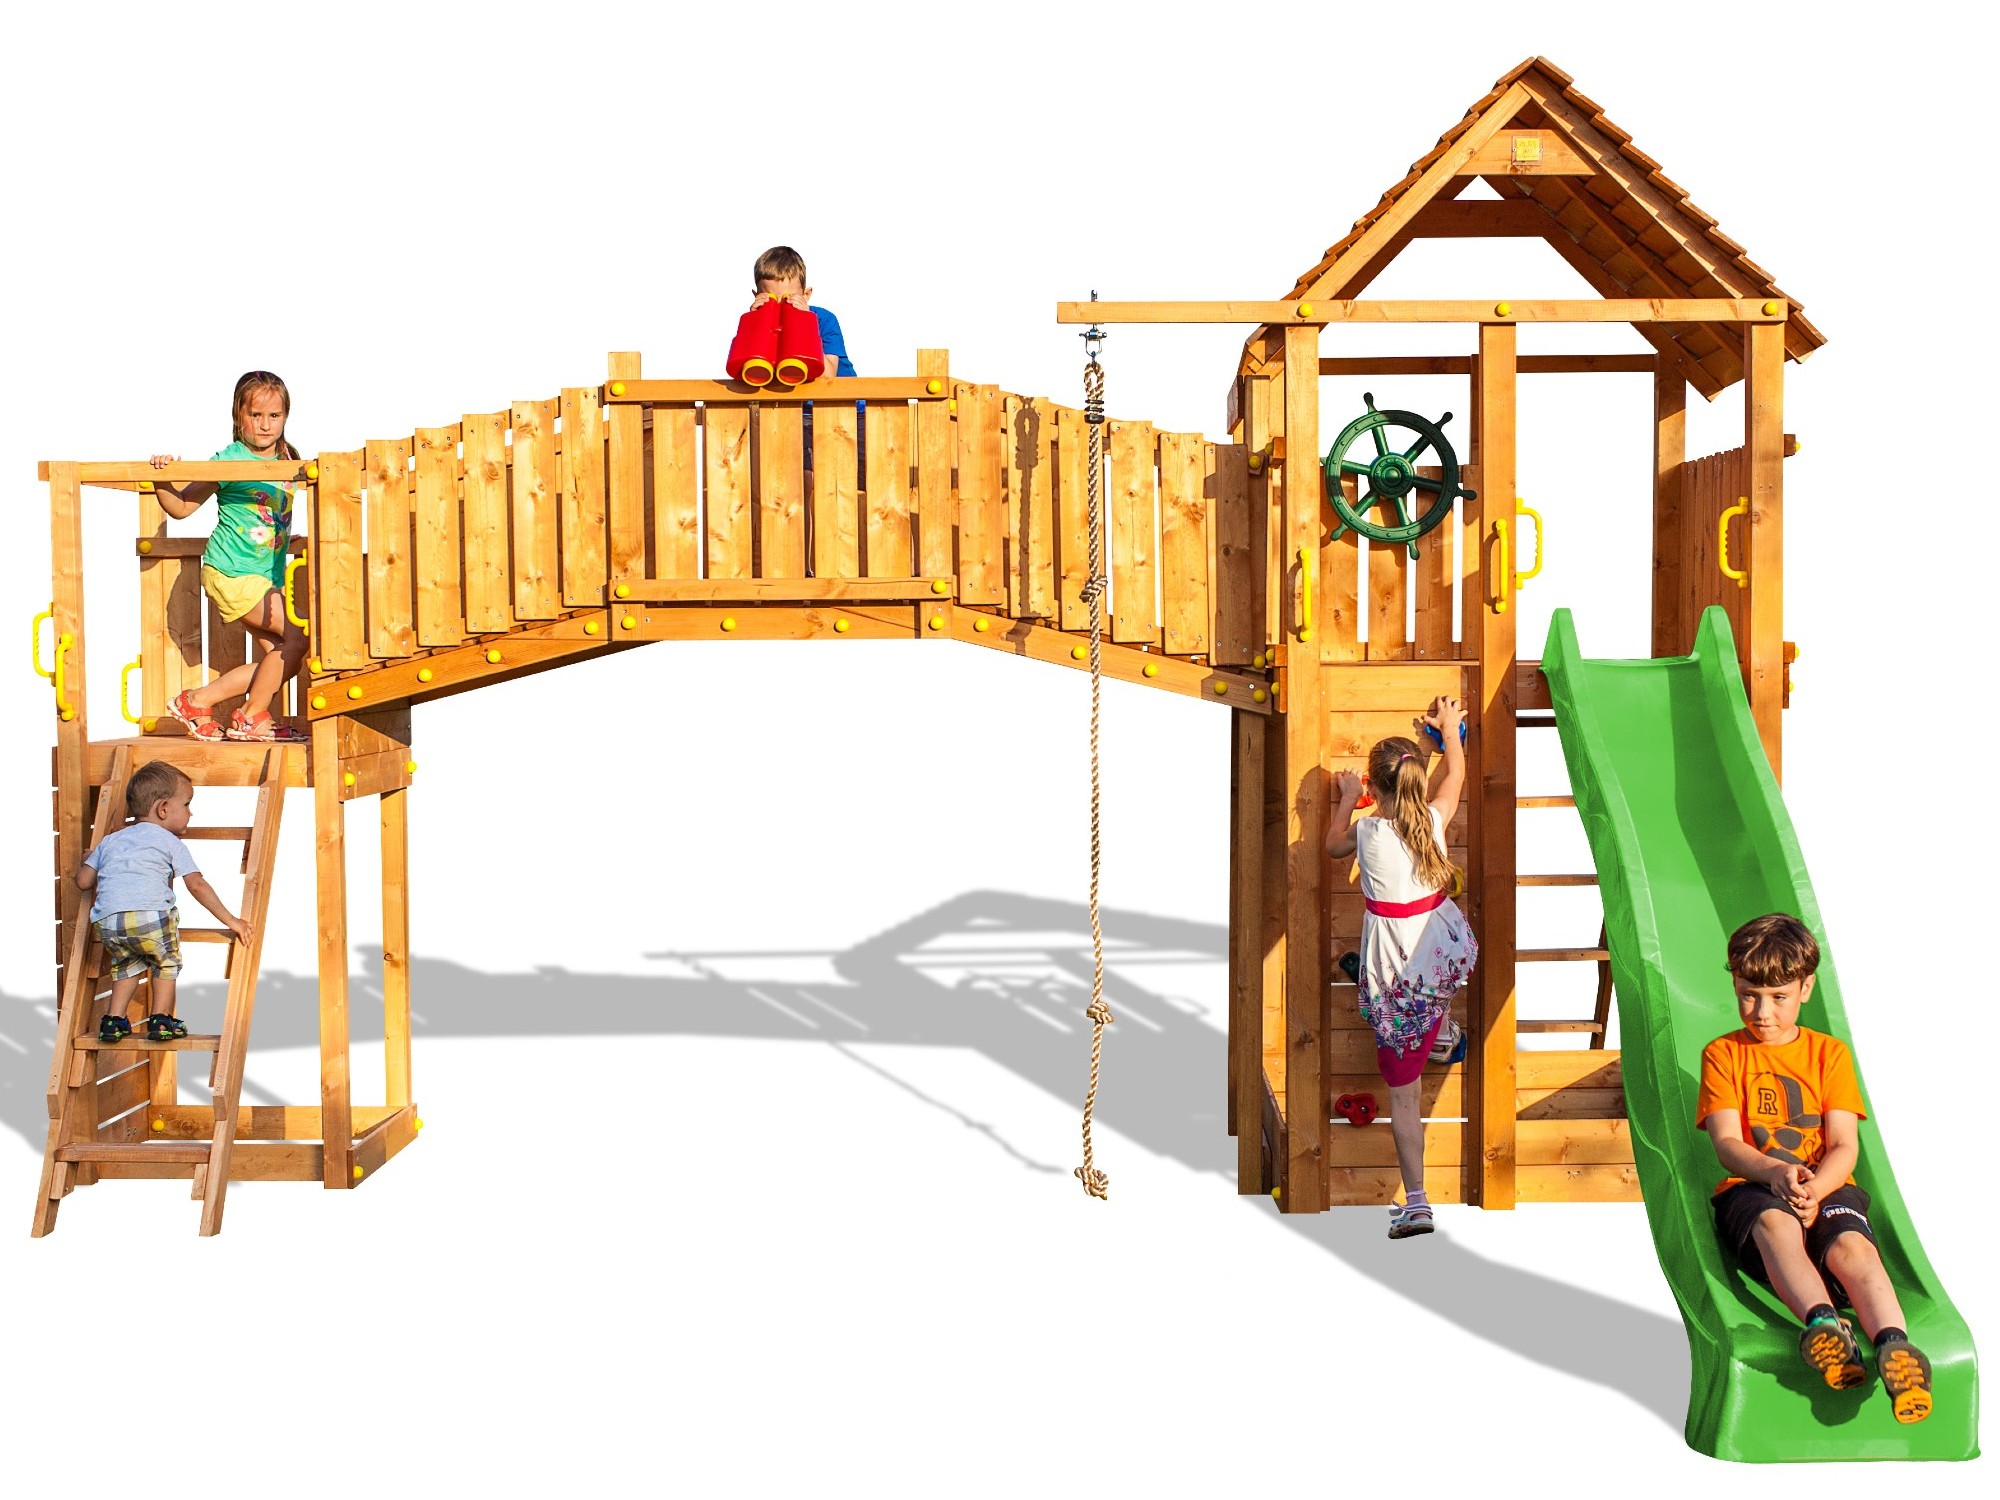 Plac zabaw drewniany duy Rainbow Fortress Tip domek, zjedalnia, drabinka, schodki, lina i cianka wspinaczkowa